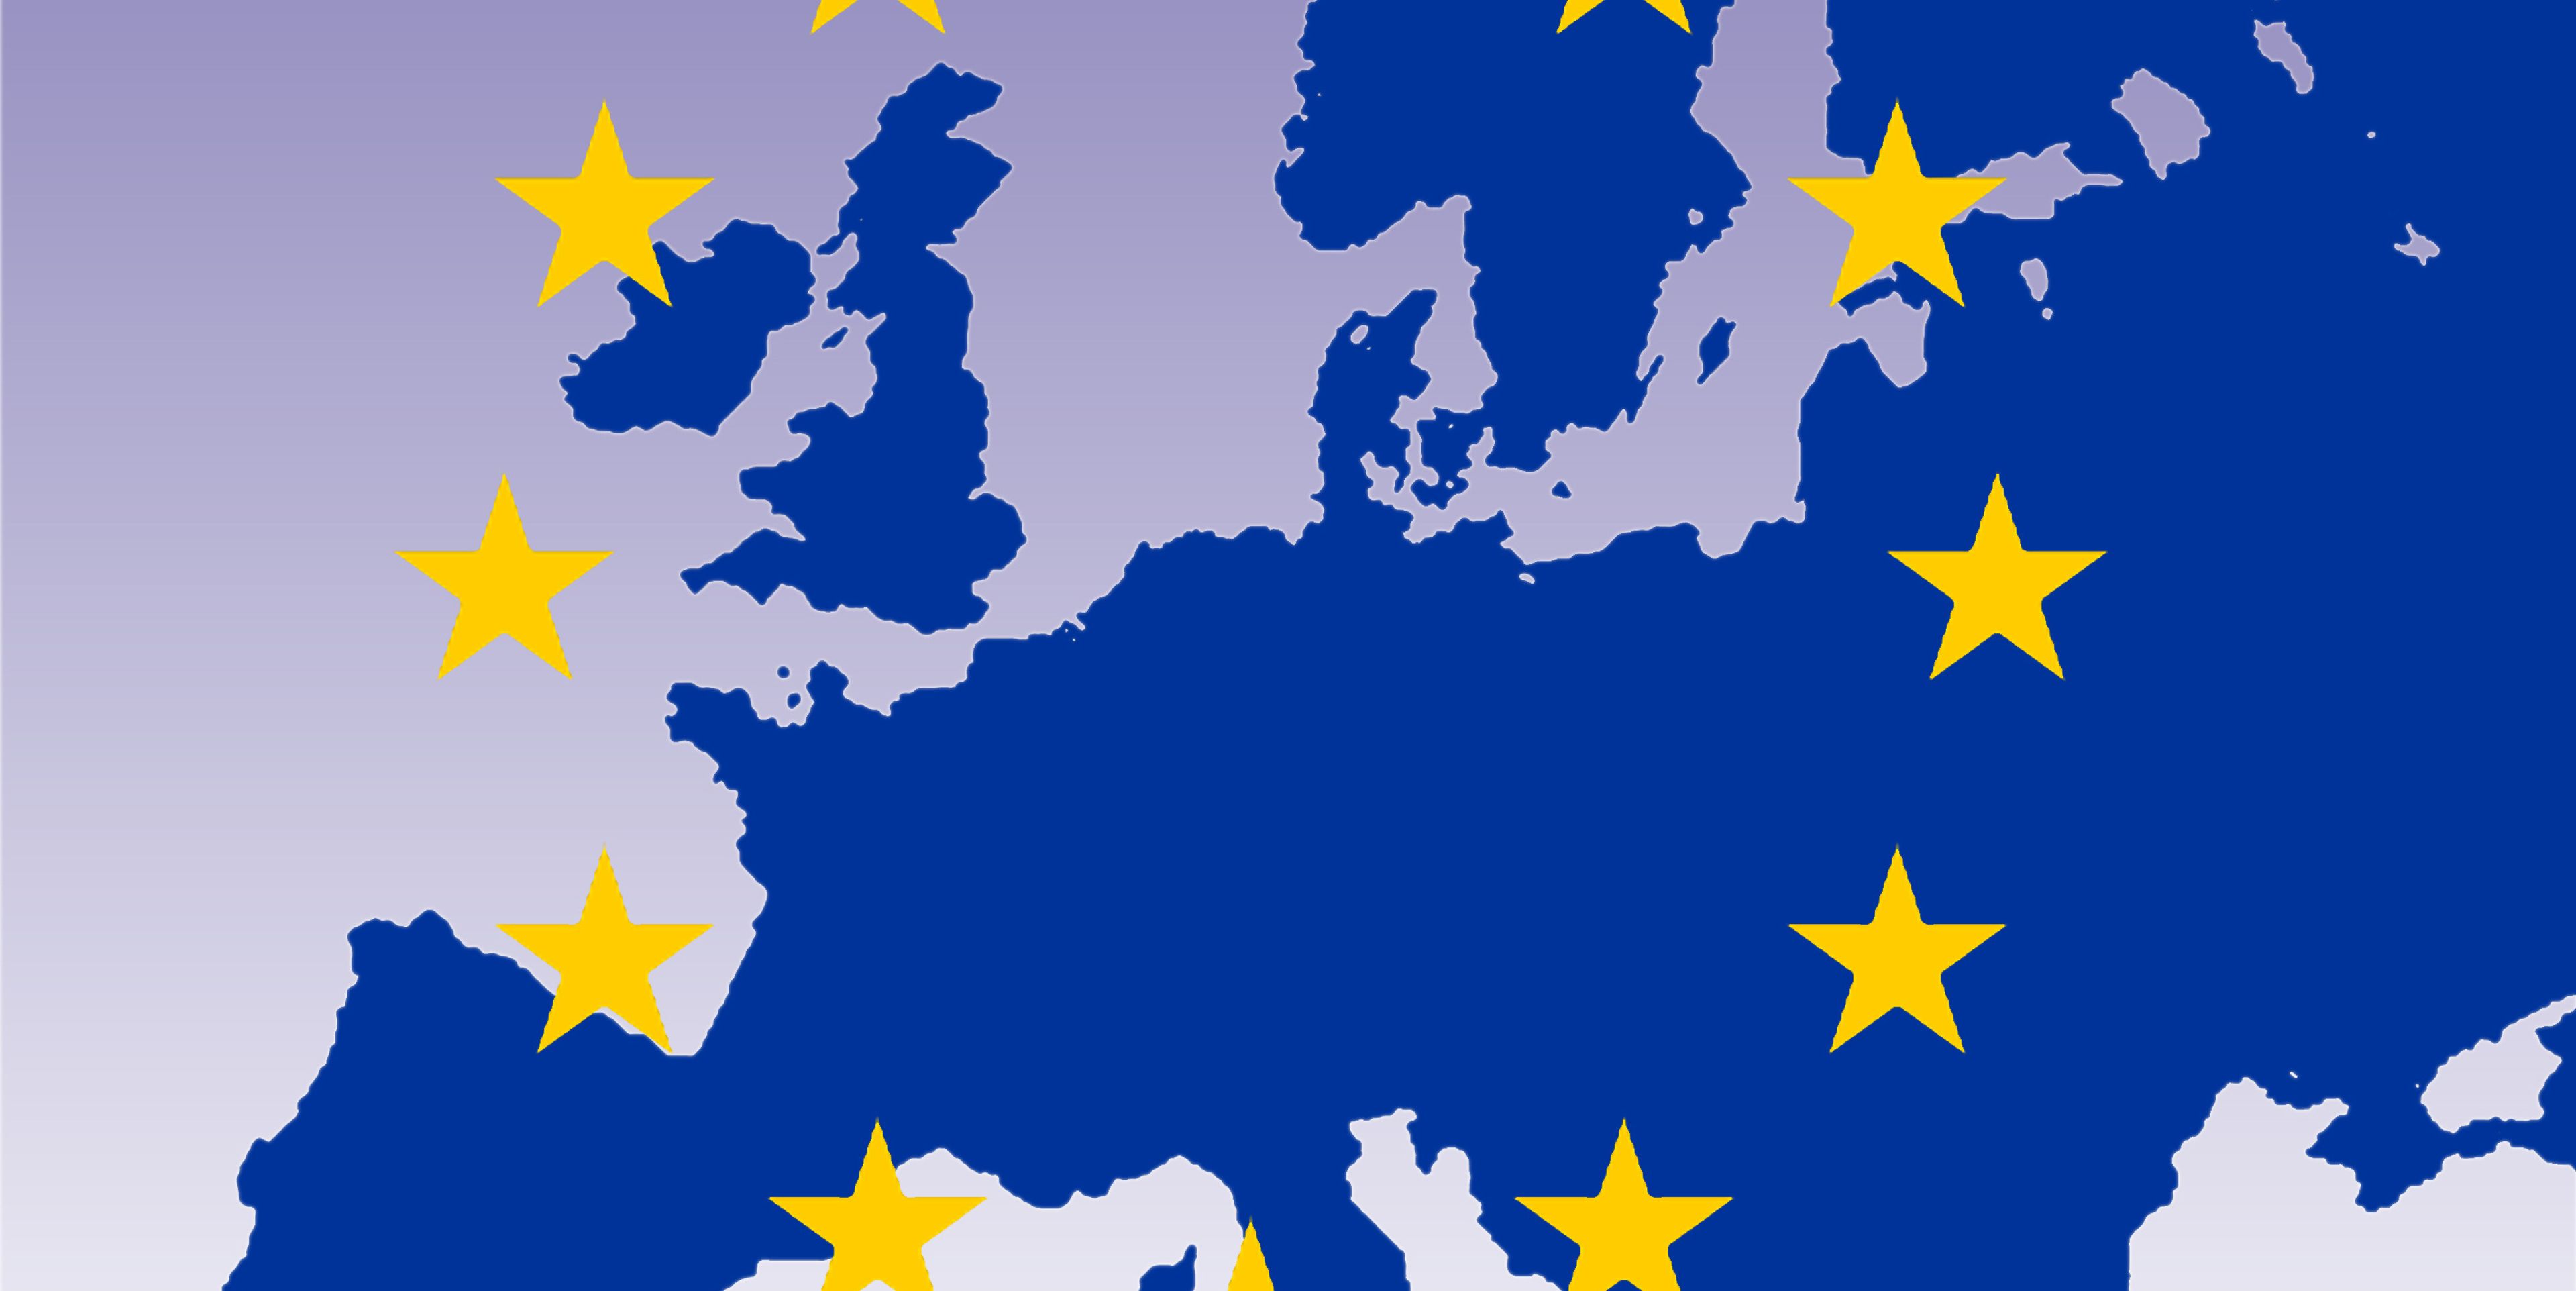 Protección consular/diplomática de los ciudadanos de la UE